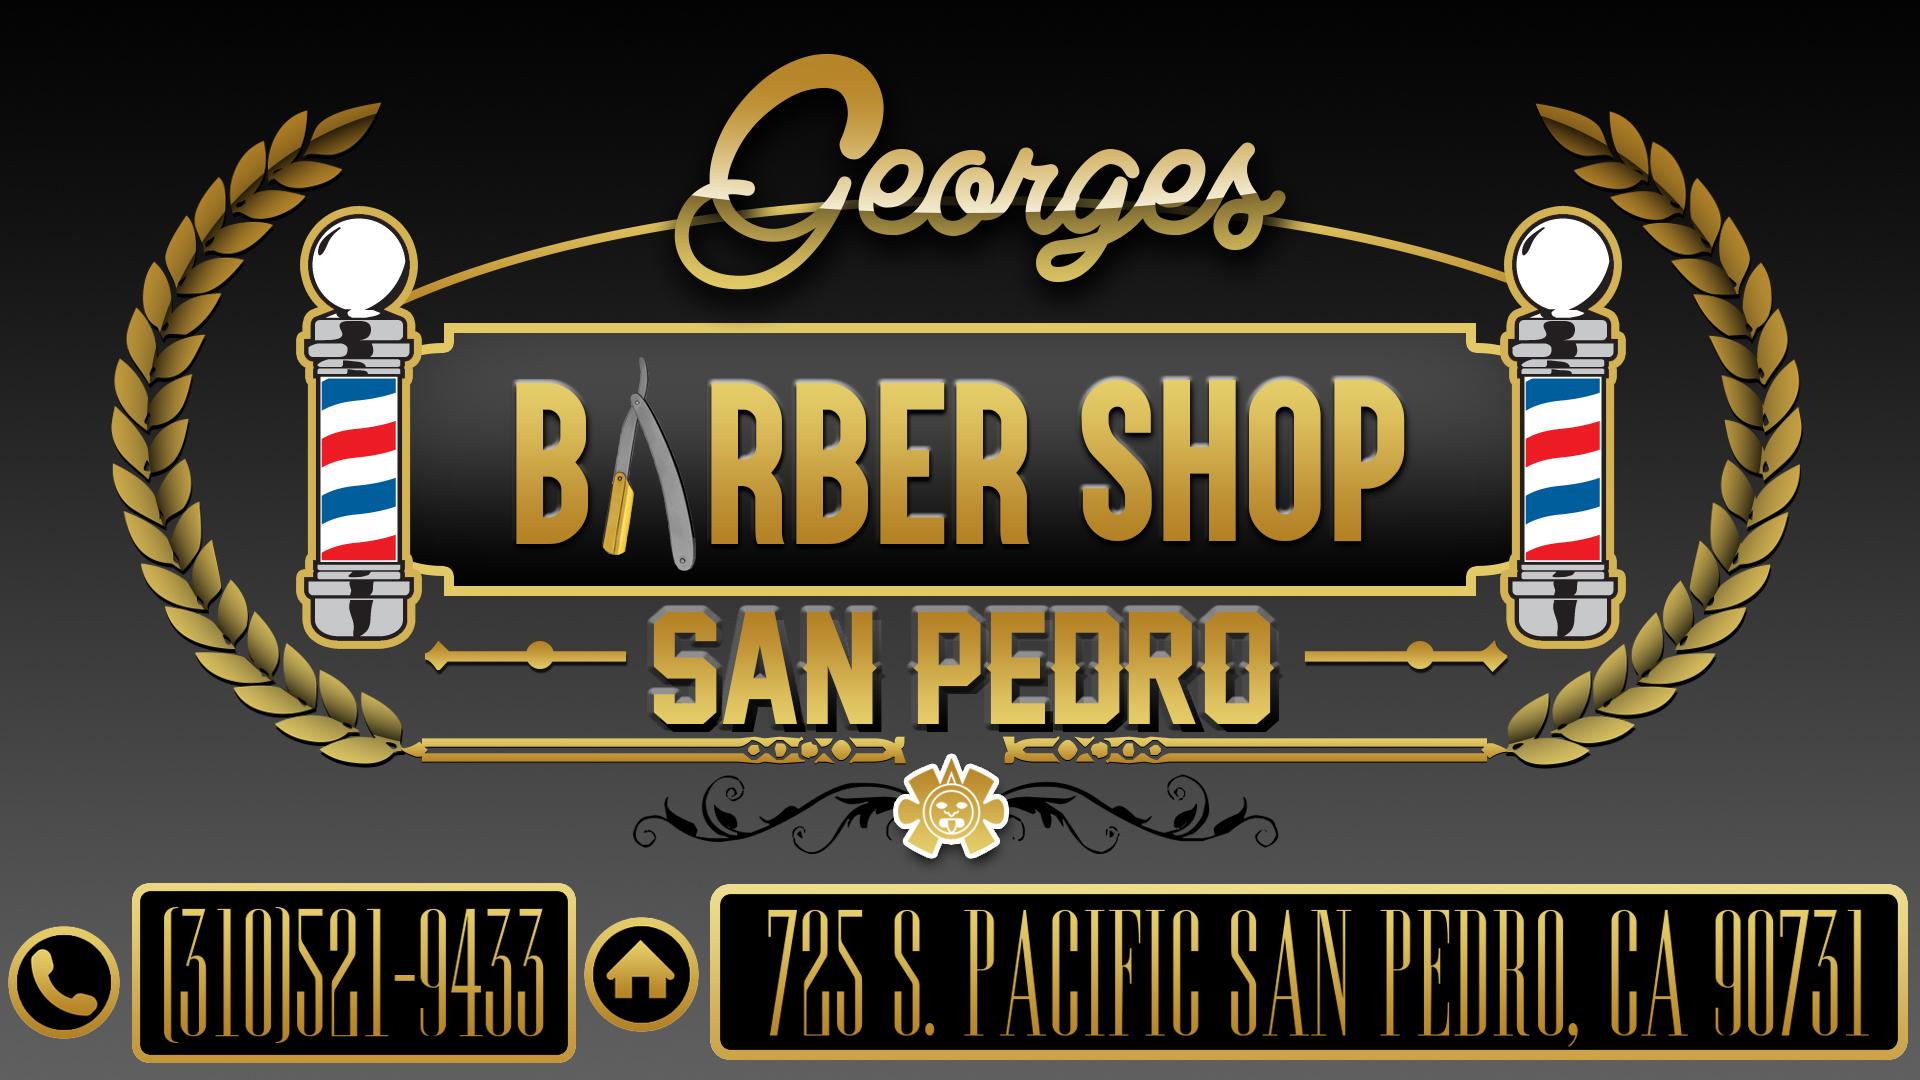 George's Barbershop